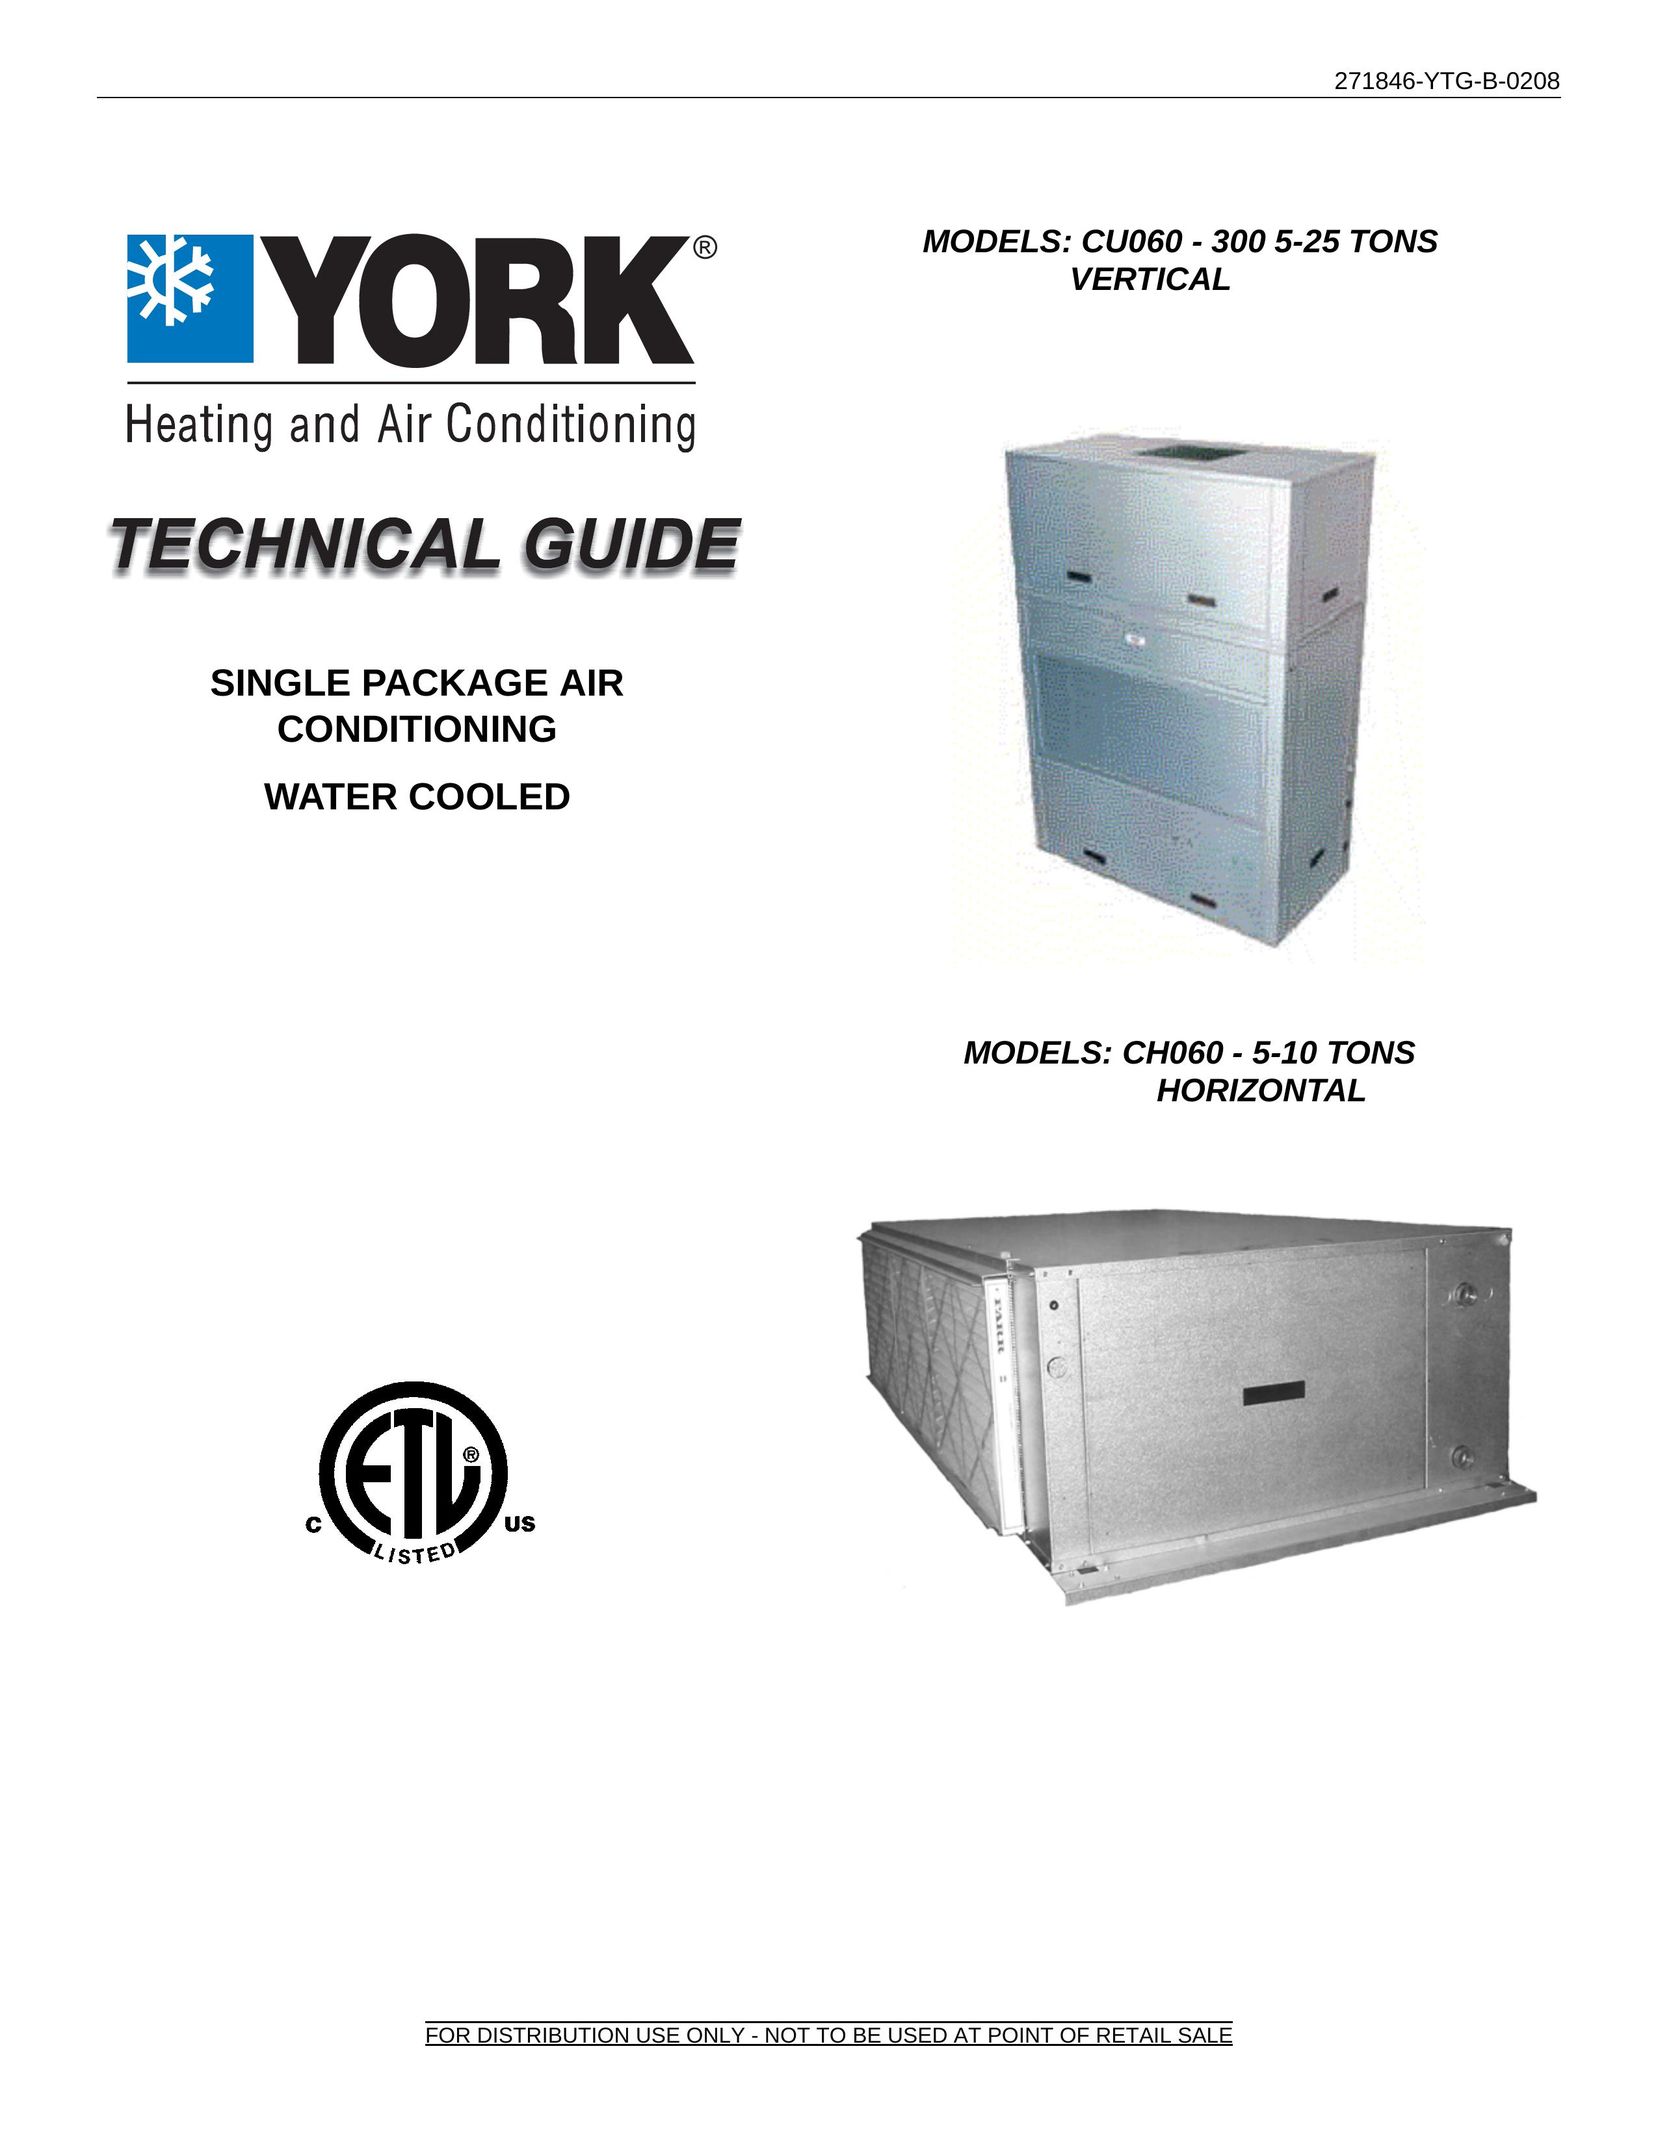 York CU060 - 300 Air Conditioner User Manual